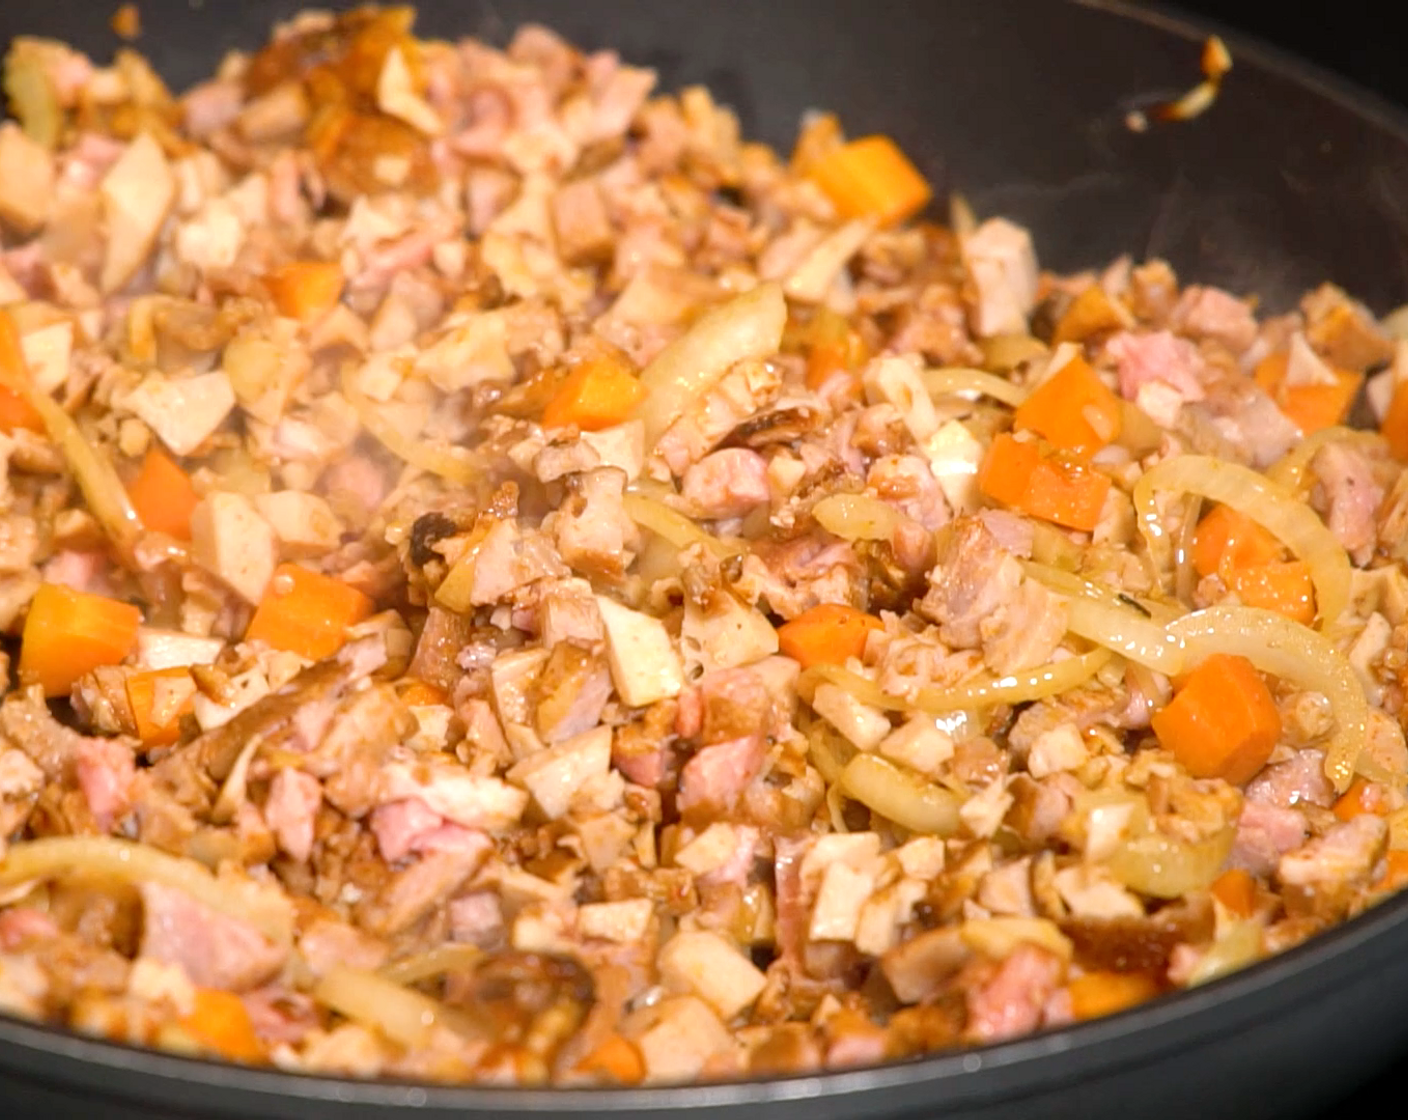 Schritt 1 Fleischfüllung: Butter (1 EL) in einer Bratpfanne erhitzen, die Zwiebel (1) und den Knoblauch (2 Zehen) darin andünsten. Karotten (2) beigeben und 2-3 Minuten dünsten. Nun das rohe Schweinefilet (600 g) hinzufügen und anbraten. Grilliertes Fleisch dazugeben, mit Rotwein (100 ml) ablöschen, Tomatensauce (400 g) beifügen. Mit Ras el Hanout (1 EL), Oregano (1 EL), Salz (wenig) und Pfeffer (wenig) abschmecken. 10 Minuten leicht köcheln.